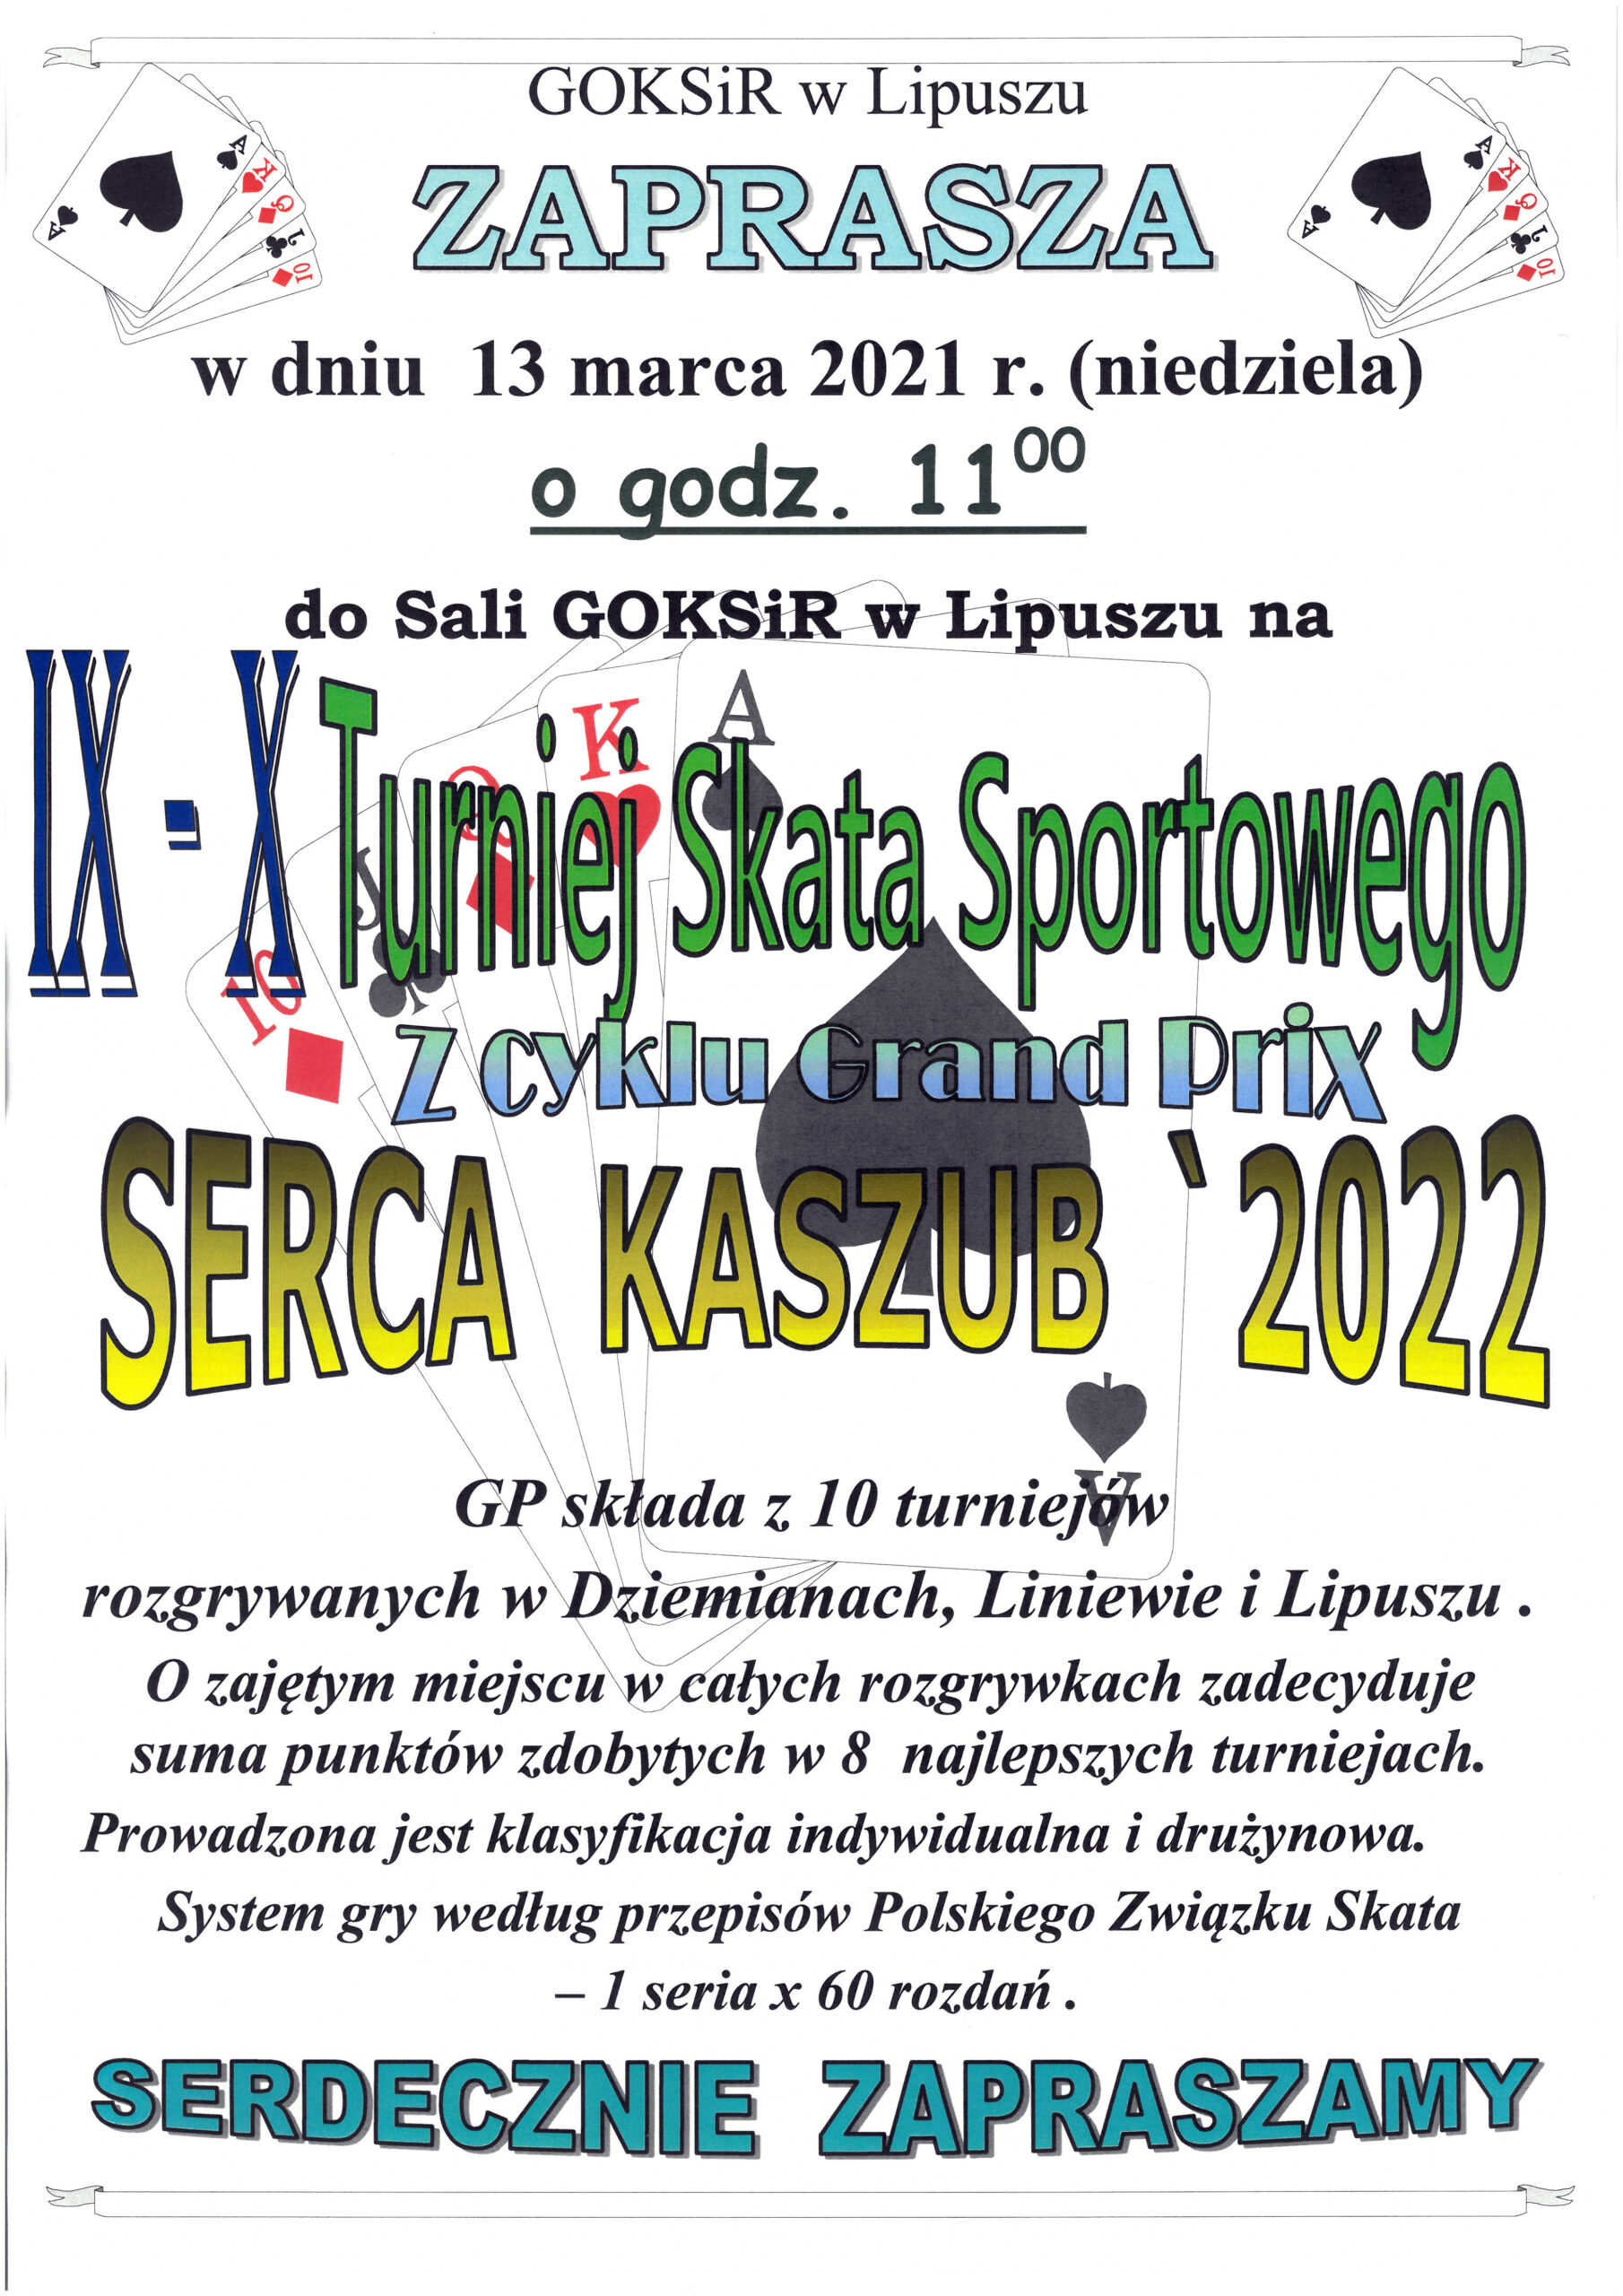 Plakat- Goksir w Lipuszu zaprasza 13 marca 2021 (niedziela) o godz. 11:00 do sali GOKSiR w Lipuszu na IX-X Turniej Skata Sportowego z cyklu Grand Prix Serca Kaszub 2022